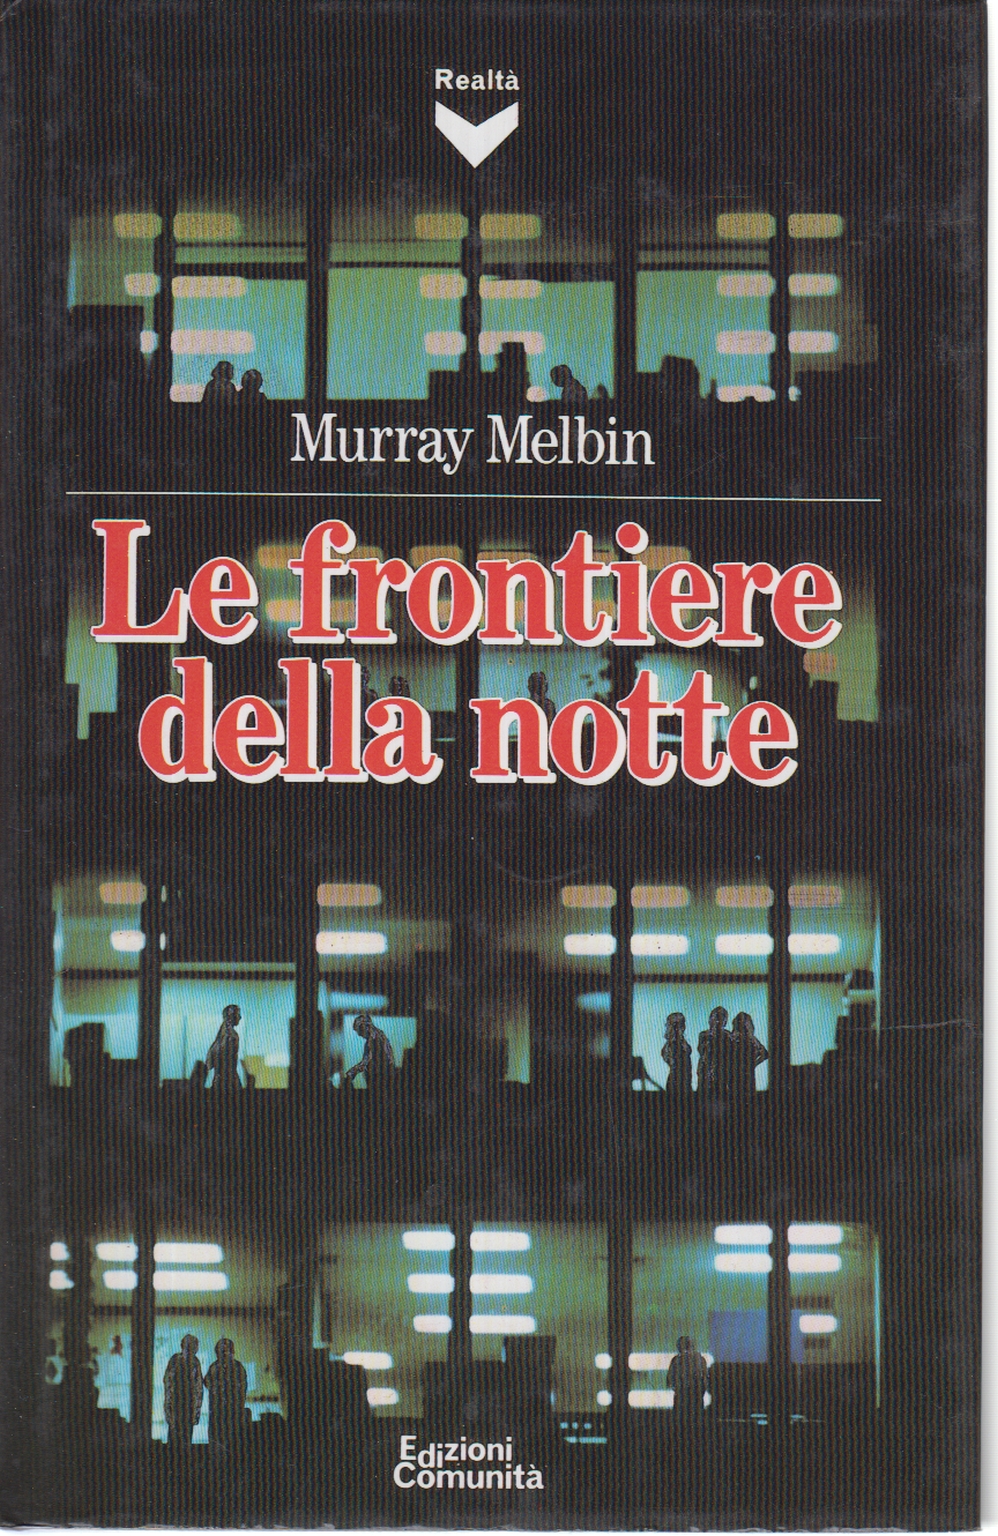 Le frontiere della notte, Murray Melbin